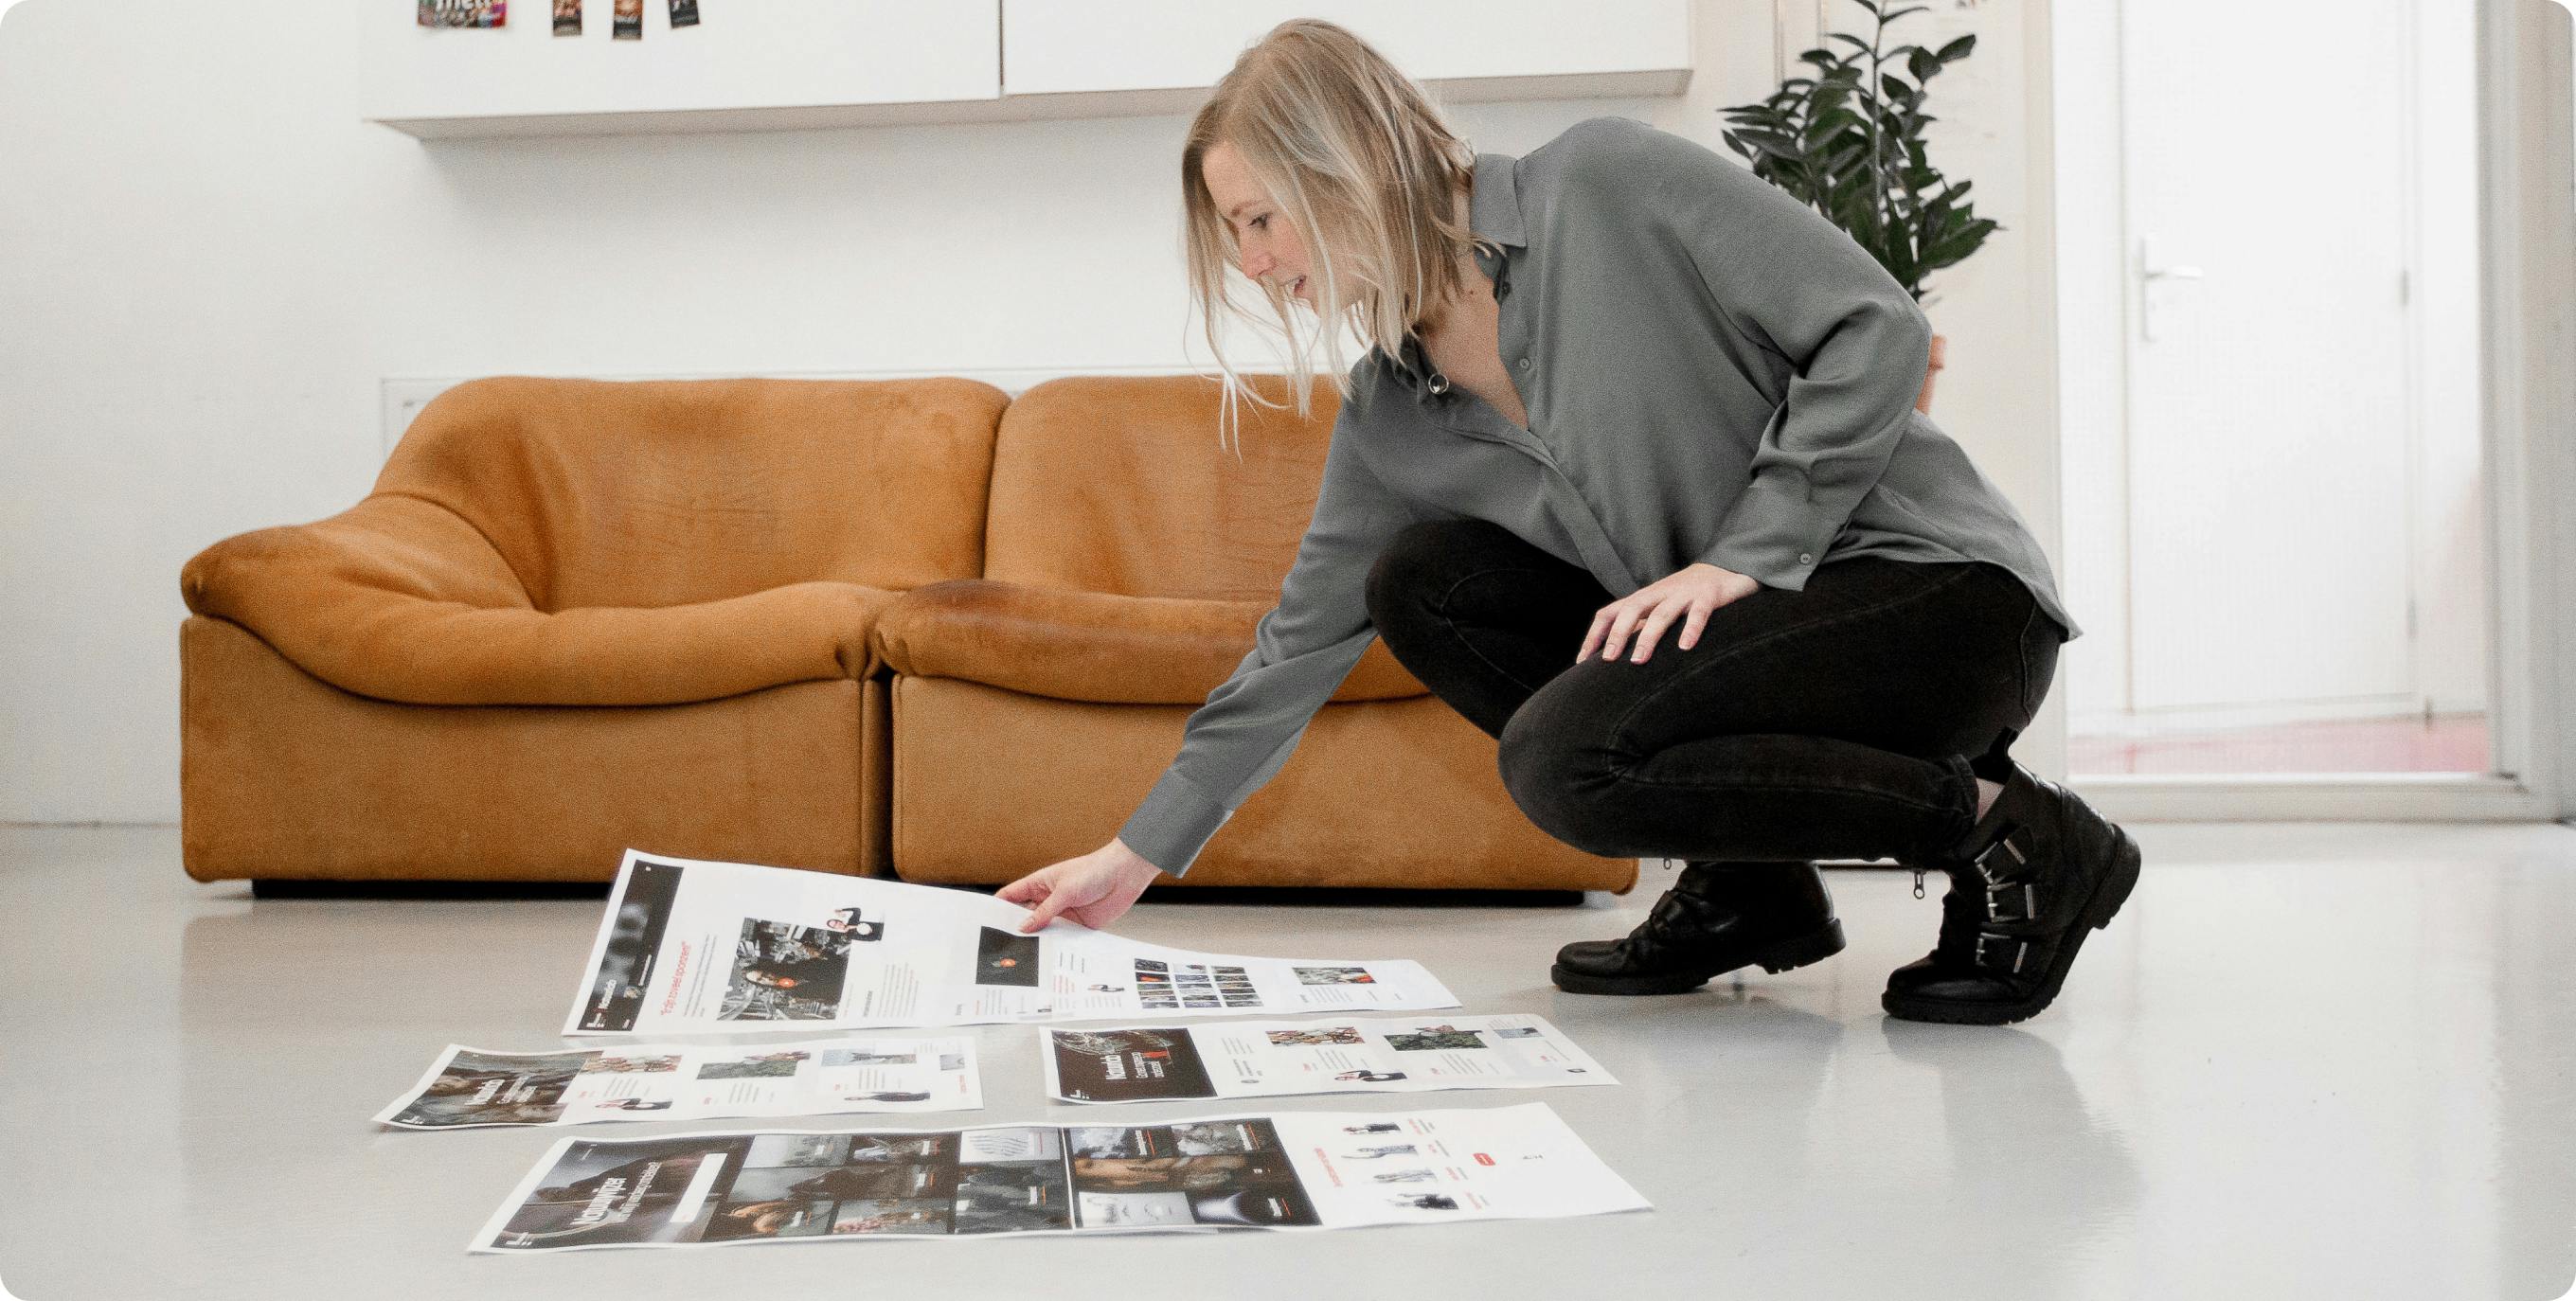 Een ontwerper zit geknield op de grond en bekijkt een aantal prints van een ontwerp.